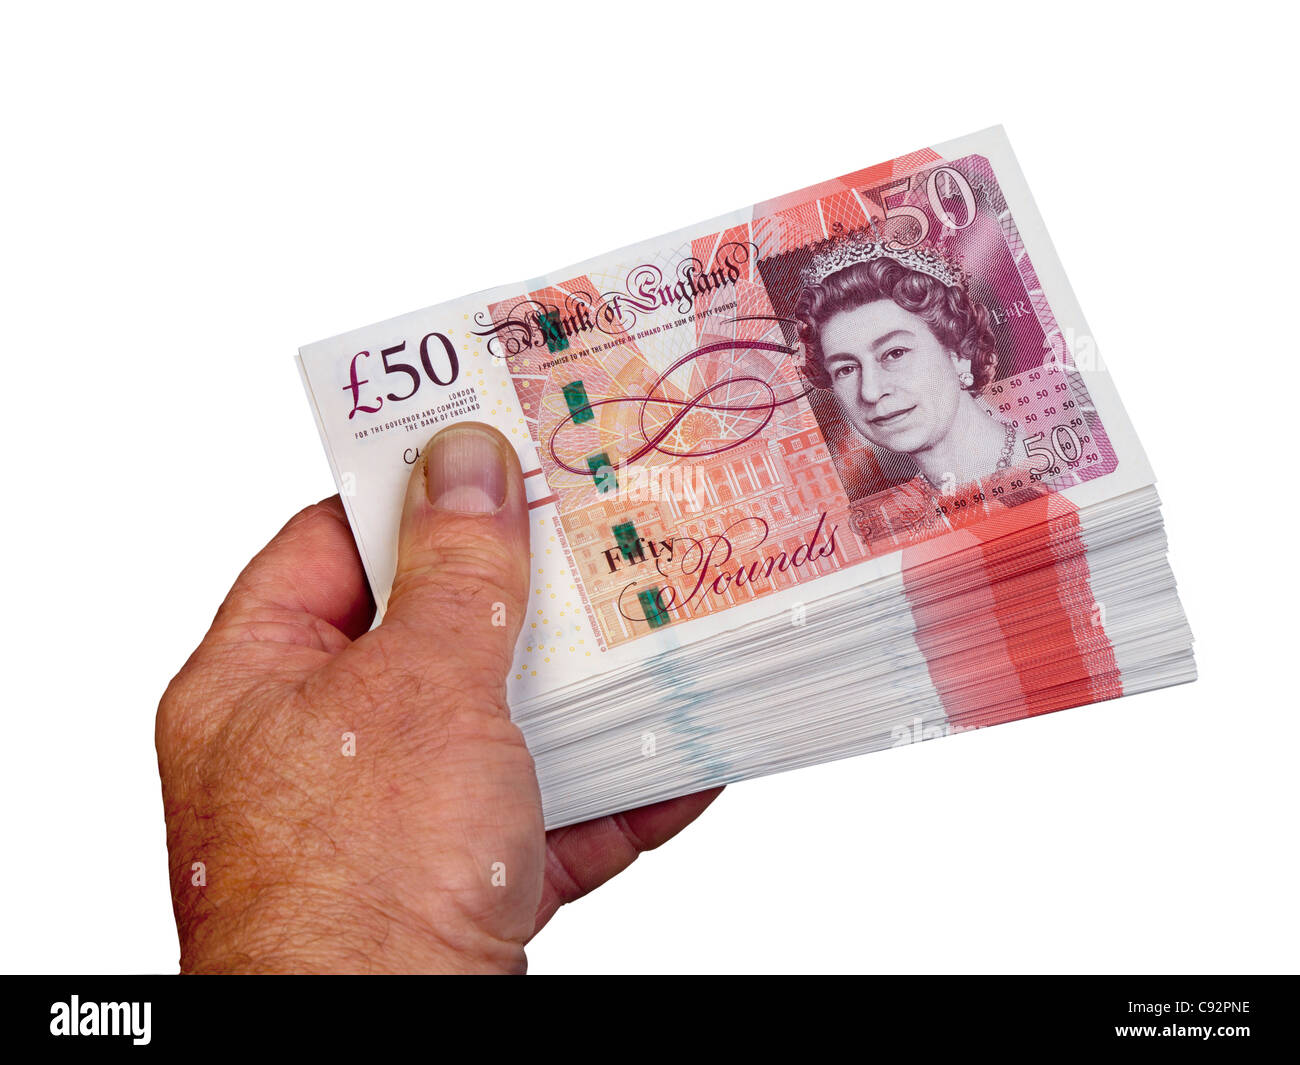 50 pound valuta britannica di banconote 50 sterline contanti detenuta in mano maschio Foto Stock